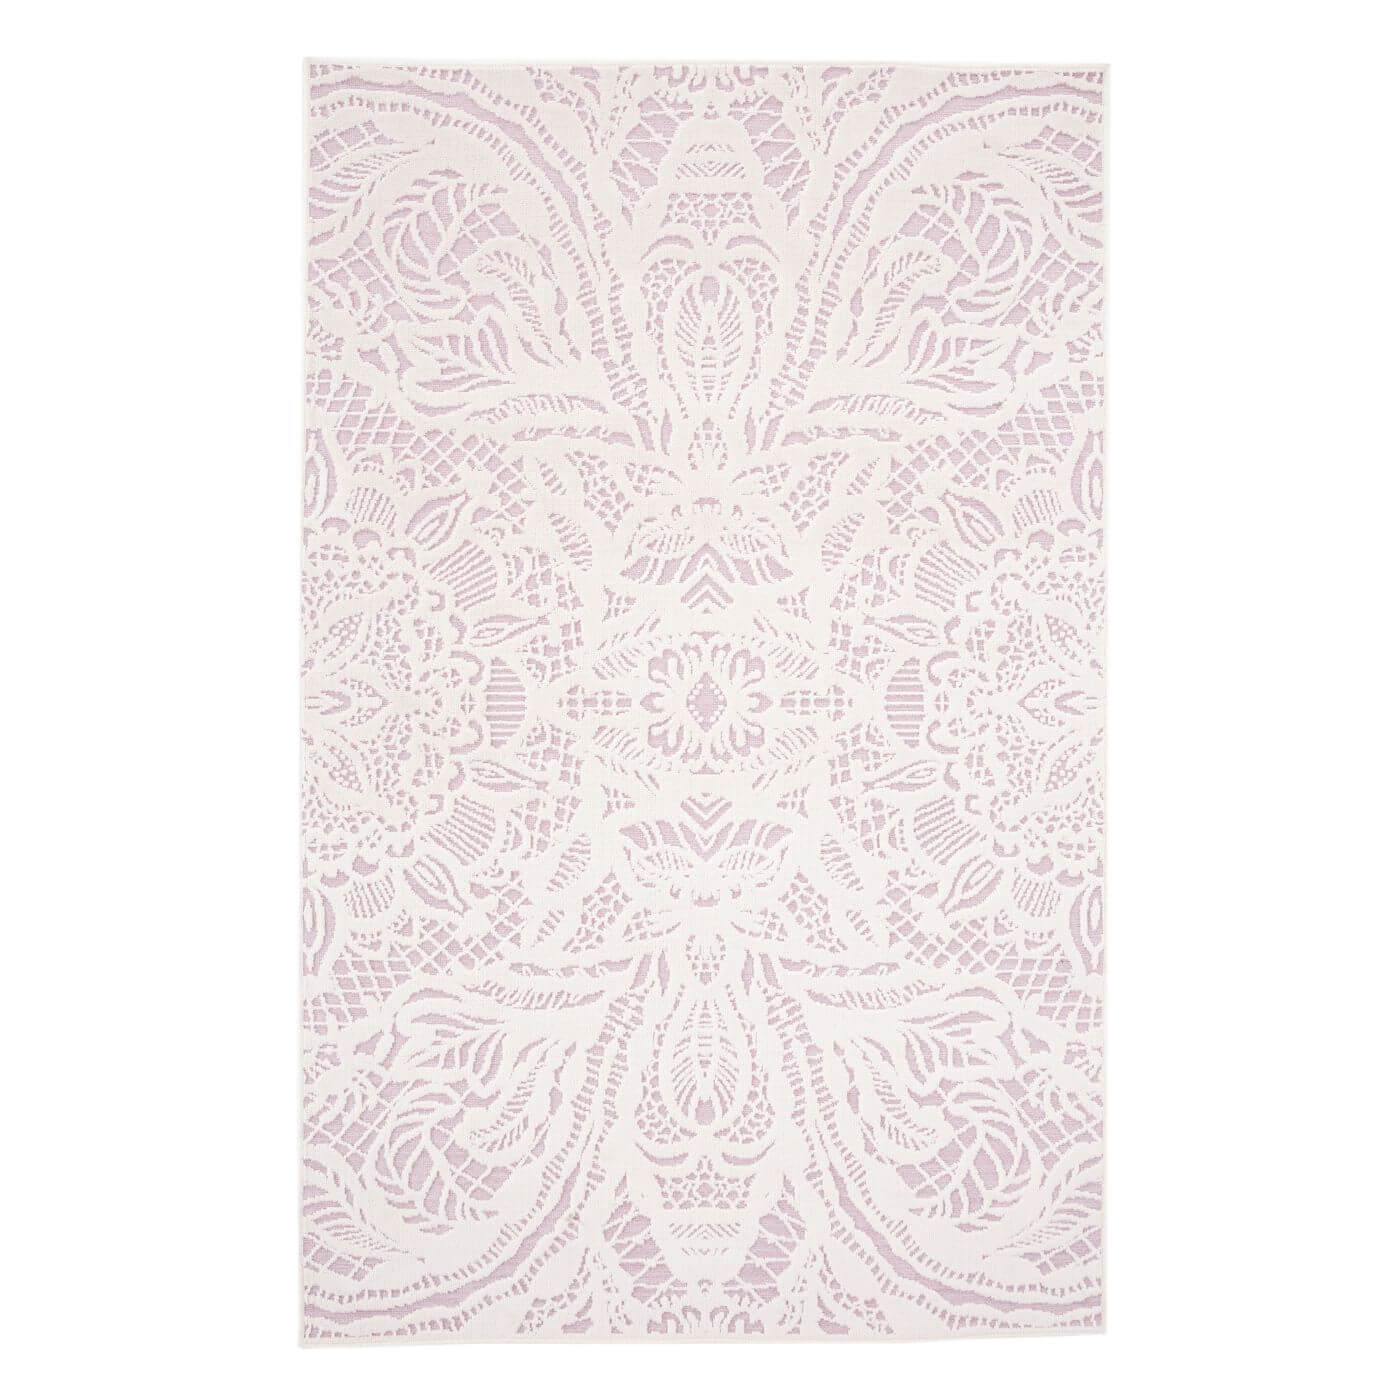 Dywanik biało różowy ALEKSANDRA. Dekoracyjny stylowy różowy dywanik w biały wzór jak koronka. Cienki dywanik do sypialni lub salonu widoczny w całości